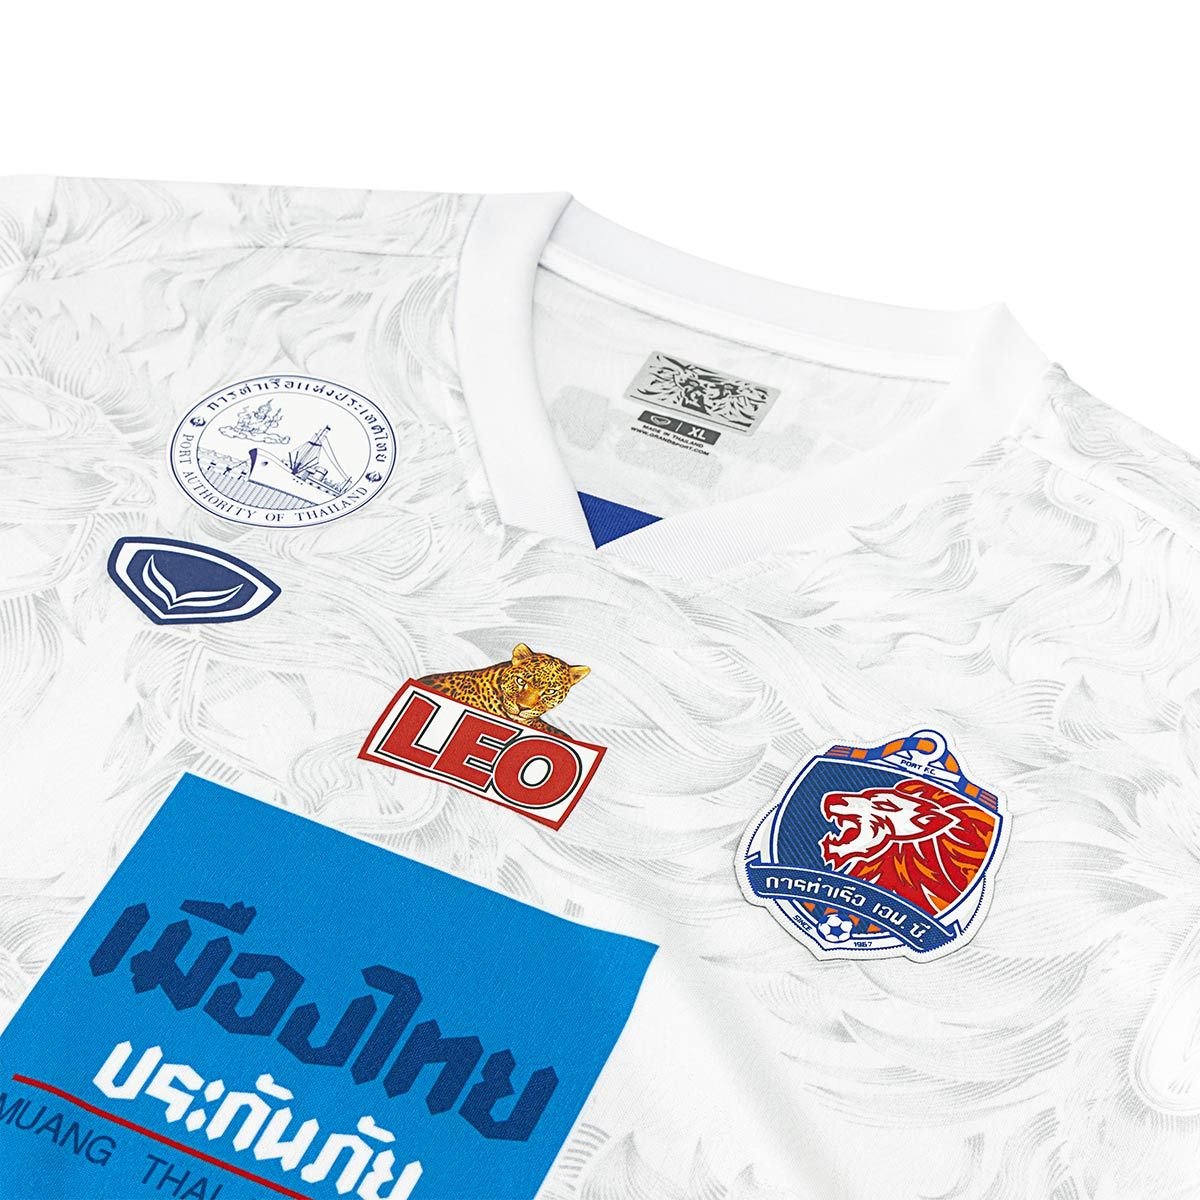 2022-23 Port FC Thailand Football Soccer League Jersey Shirt Goalkeeper  Purple - Player Edition